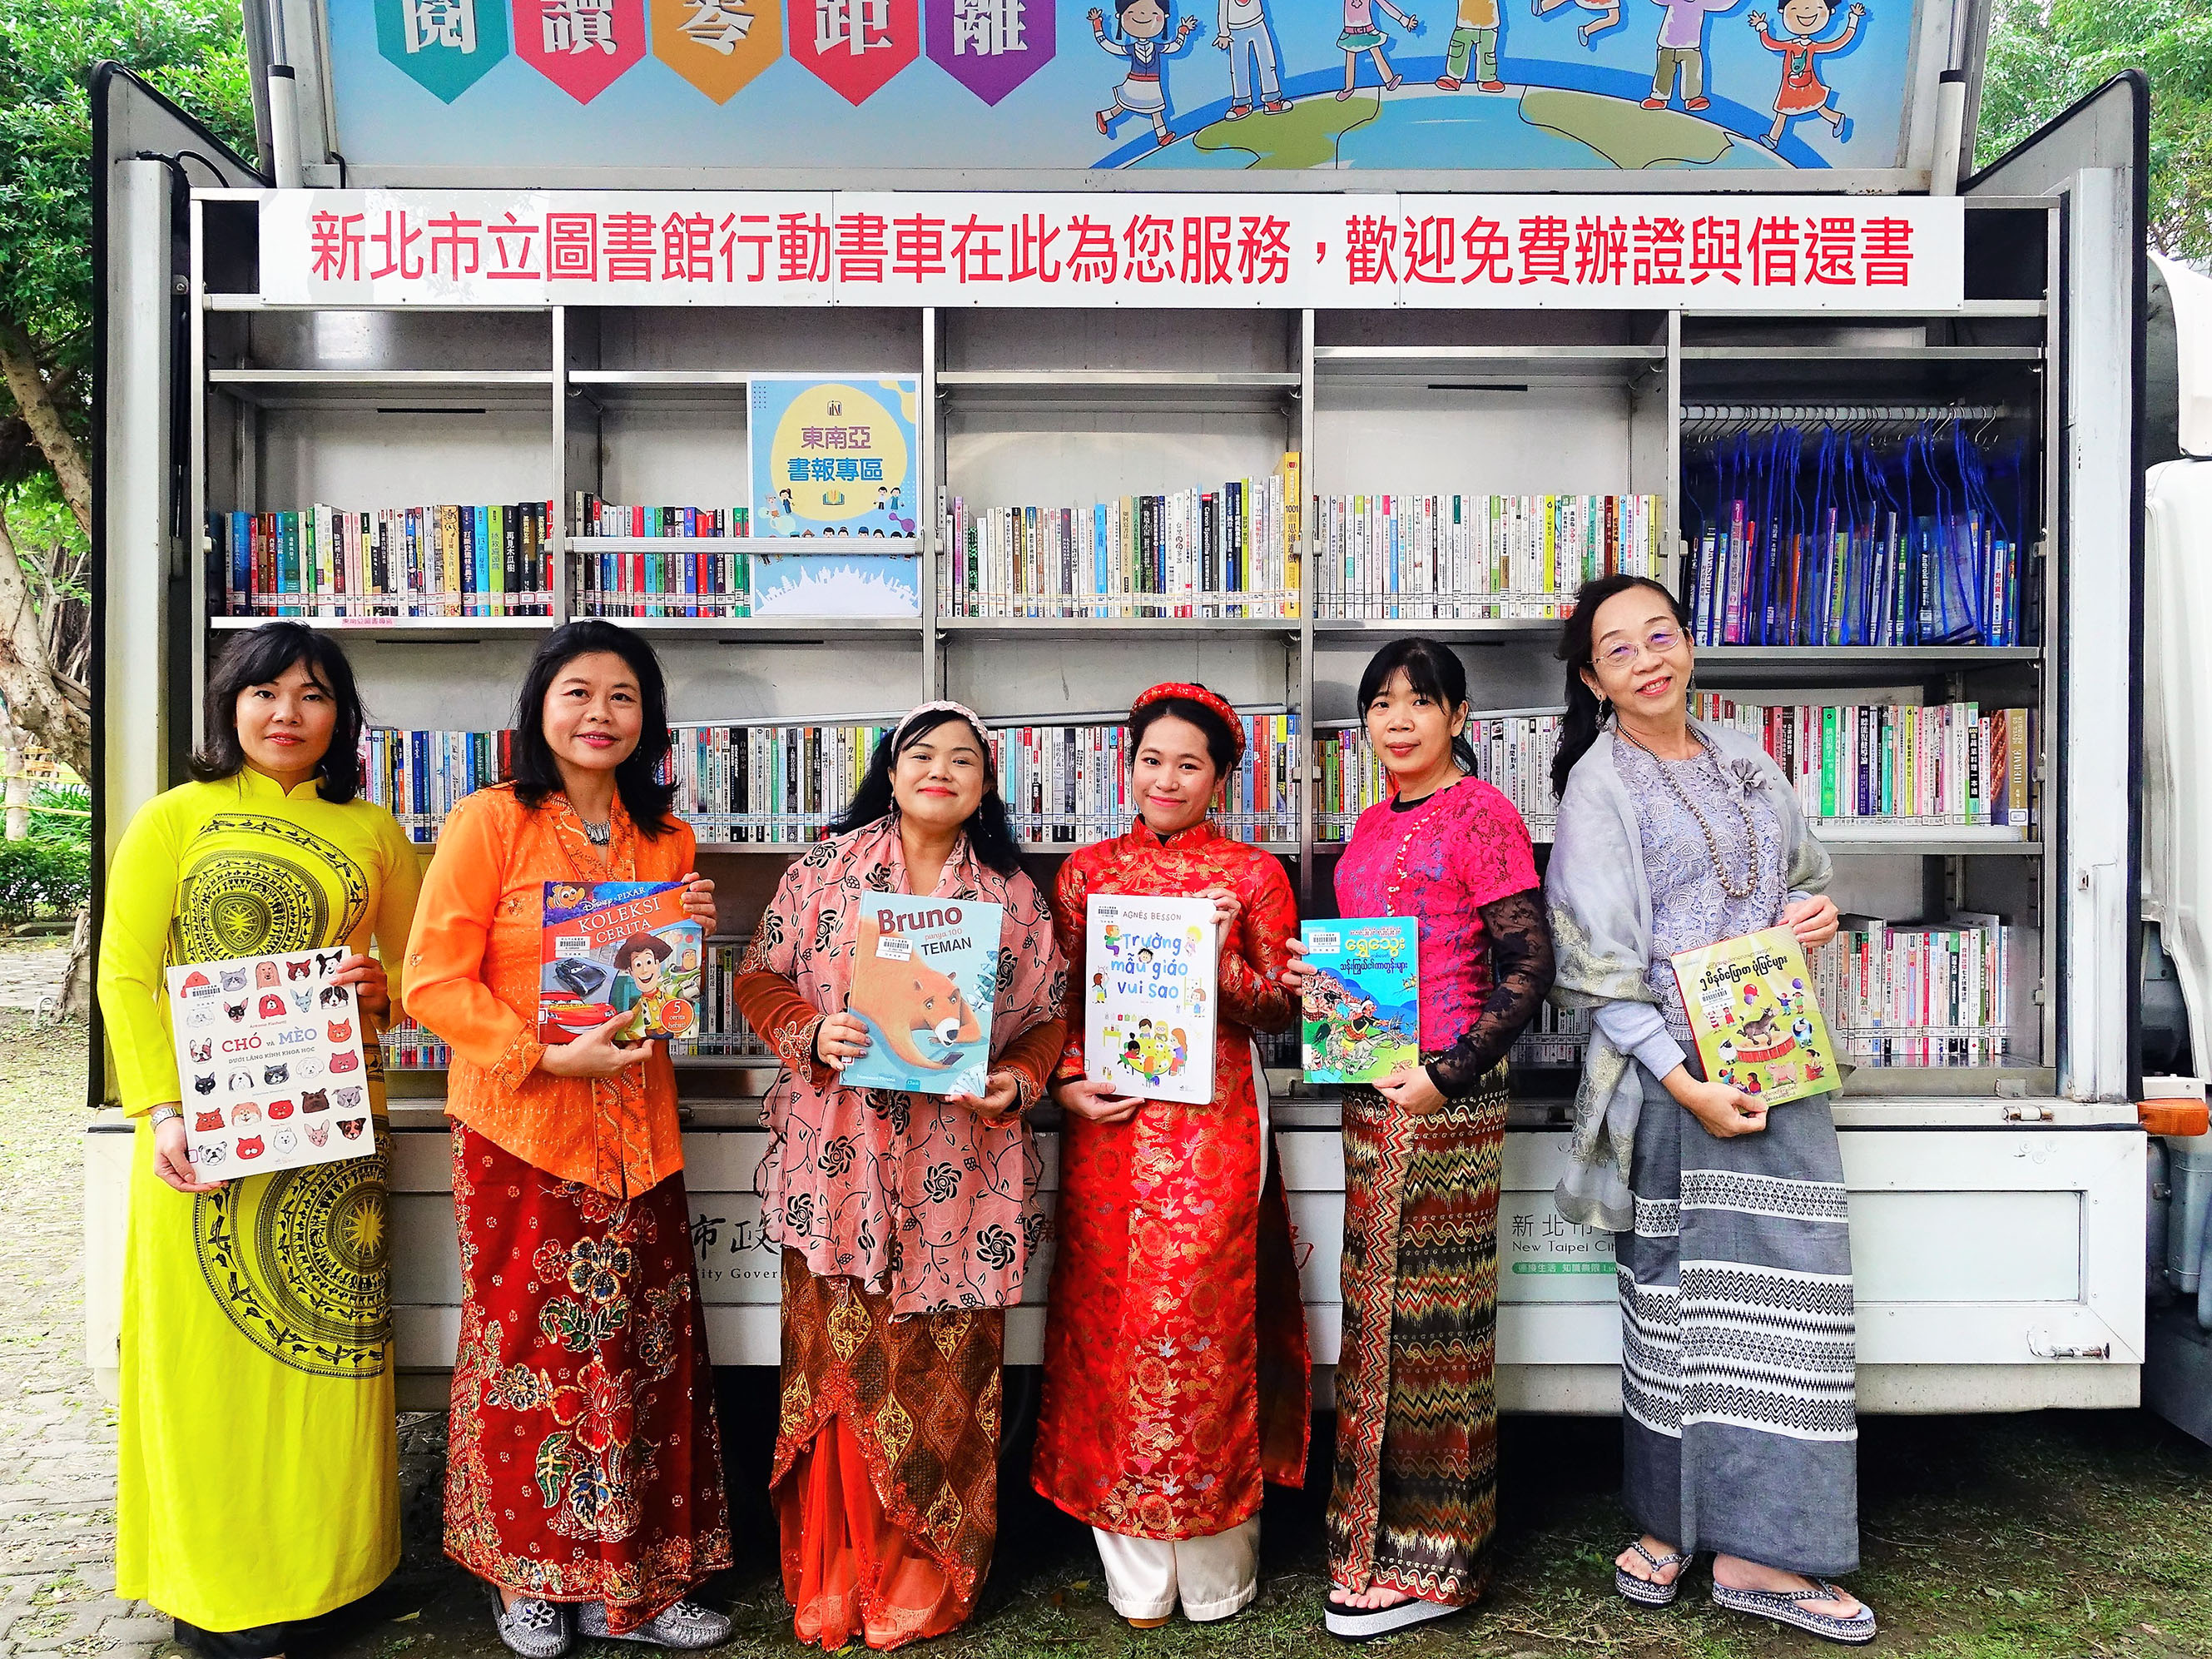 因應疫情，新住民難以返鄉，新北市行動圖書車特別新推出「東南亞閱讀」服務，提供6國語言的書籍，用母語閱讀溫暖新住民思鄉情